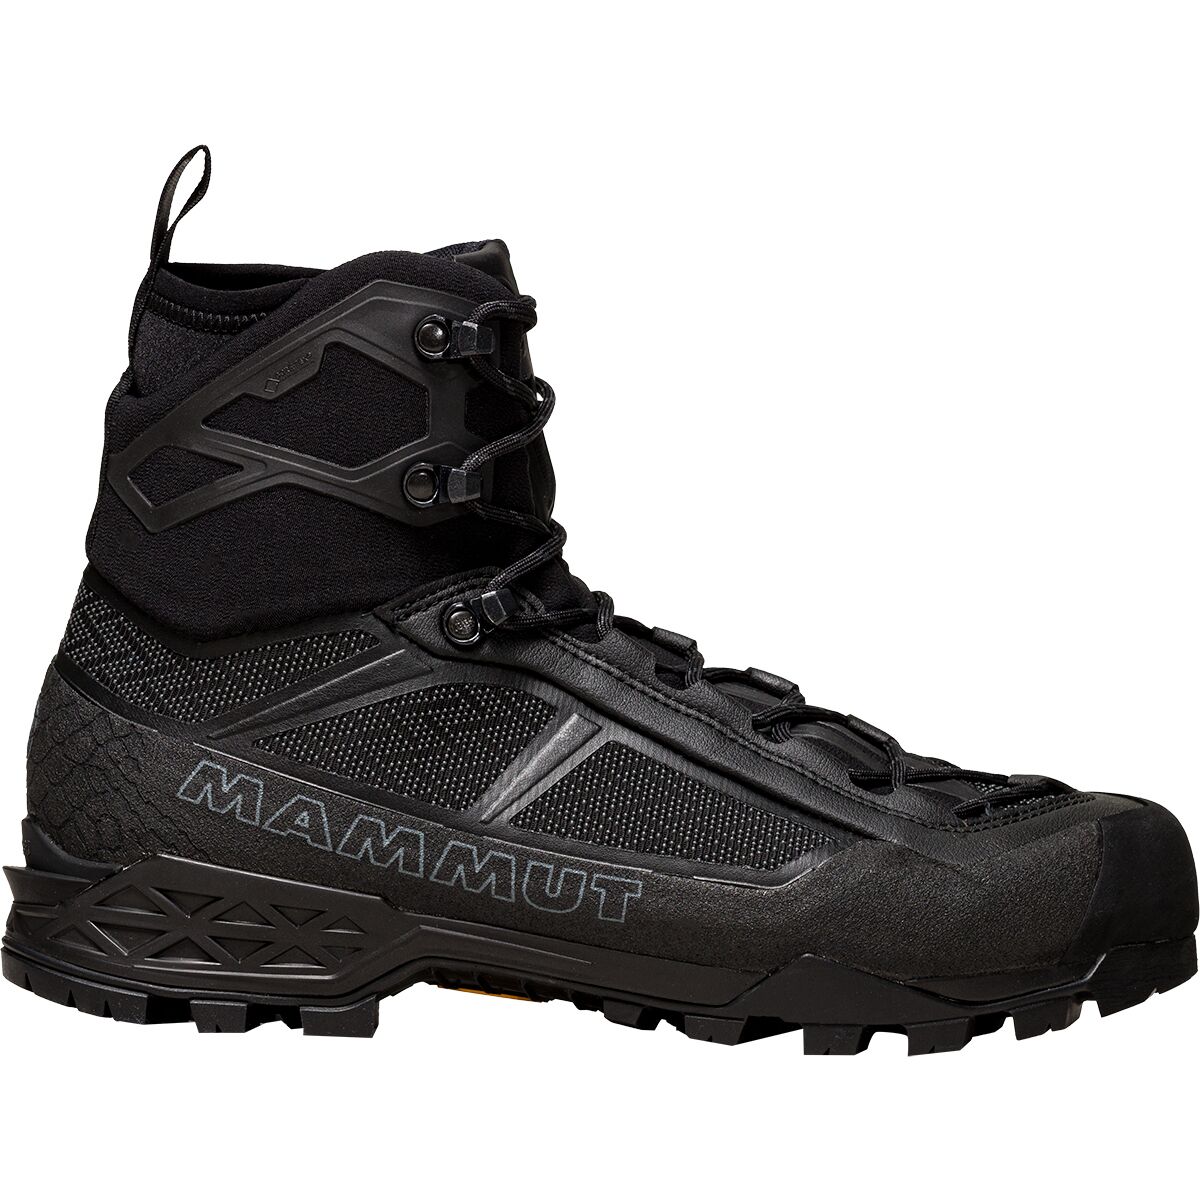 Taiss Light Mid GTX Mountaineering Boot - Men